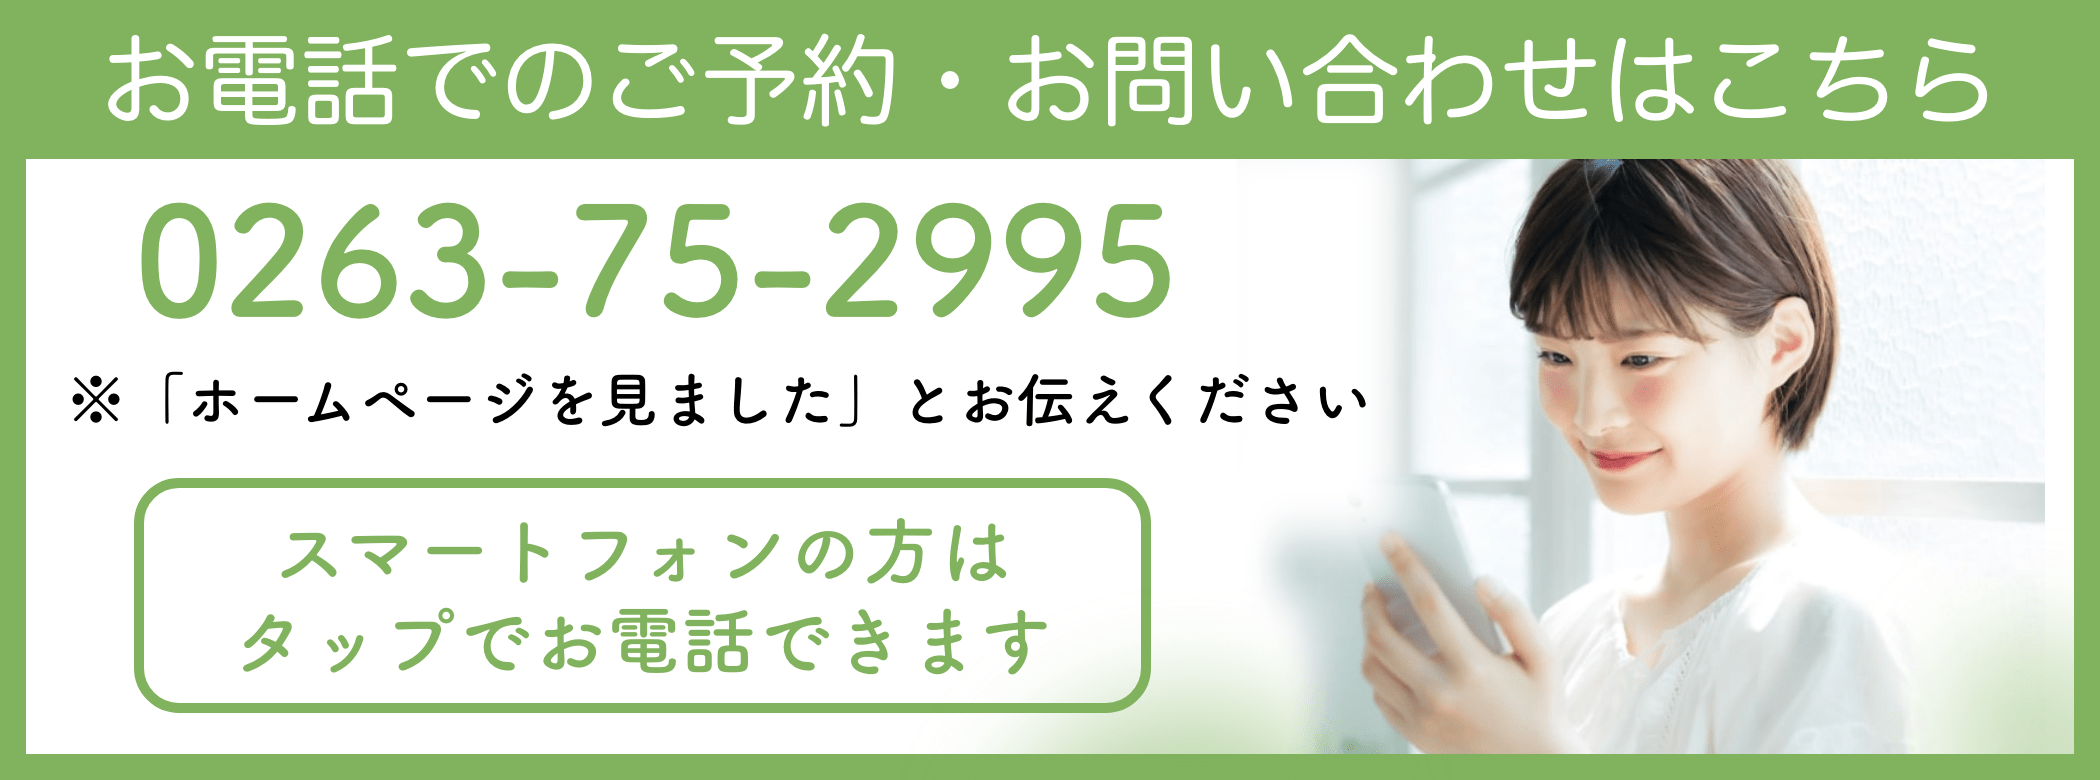 松本市あがたの森接骨院の電話バナー